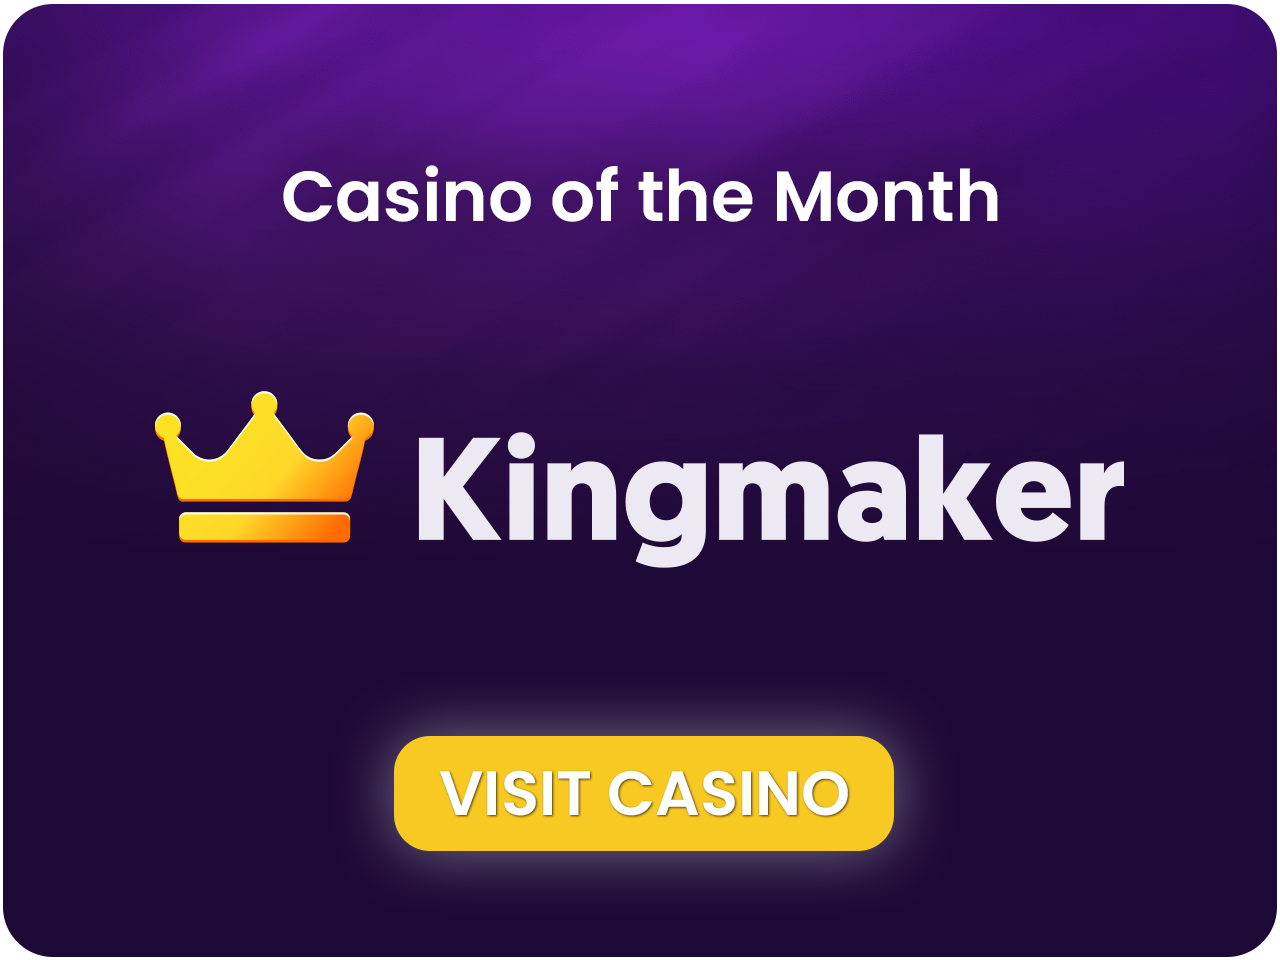 Kingmaker Casino van de Maand